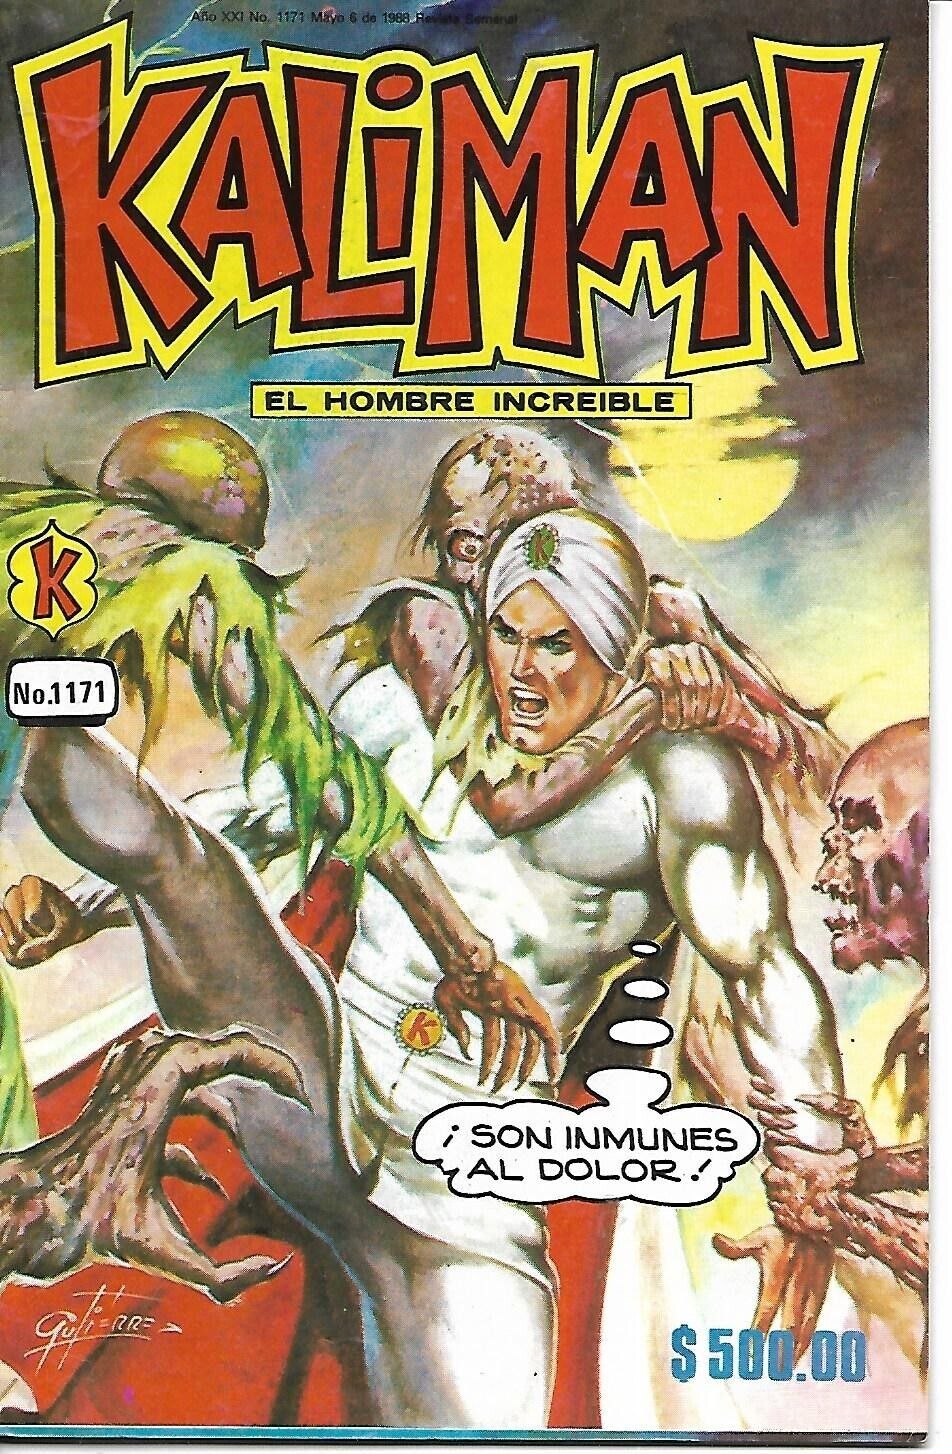 Kaliman El Hombre Increible #1171 - Mayo 6, 1988 - Mexico